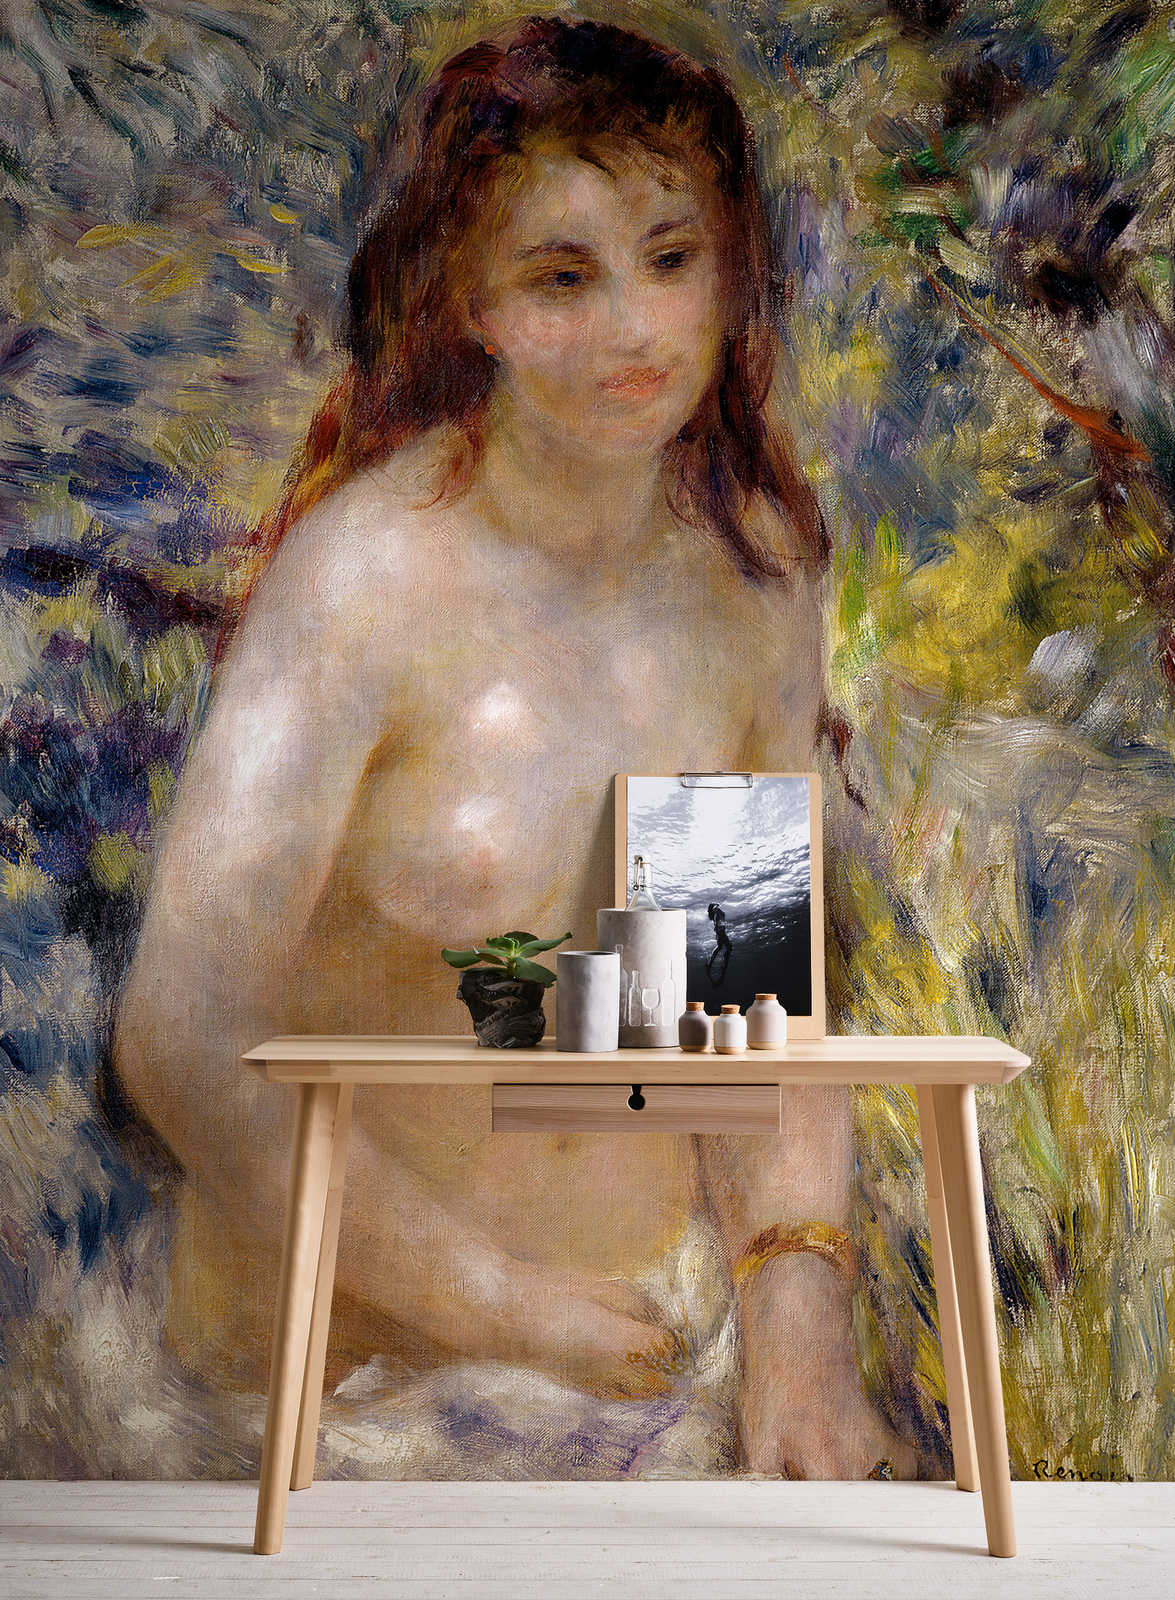             Muurschildering "Effect van het zonlicht" door Pierre Auguste Renoir
        